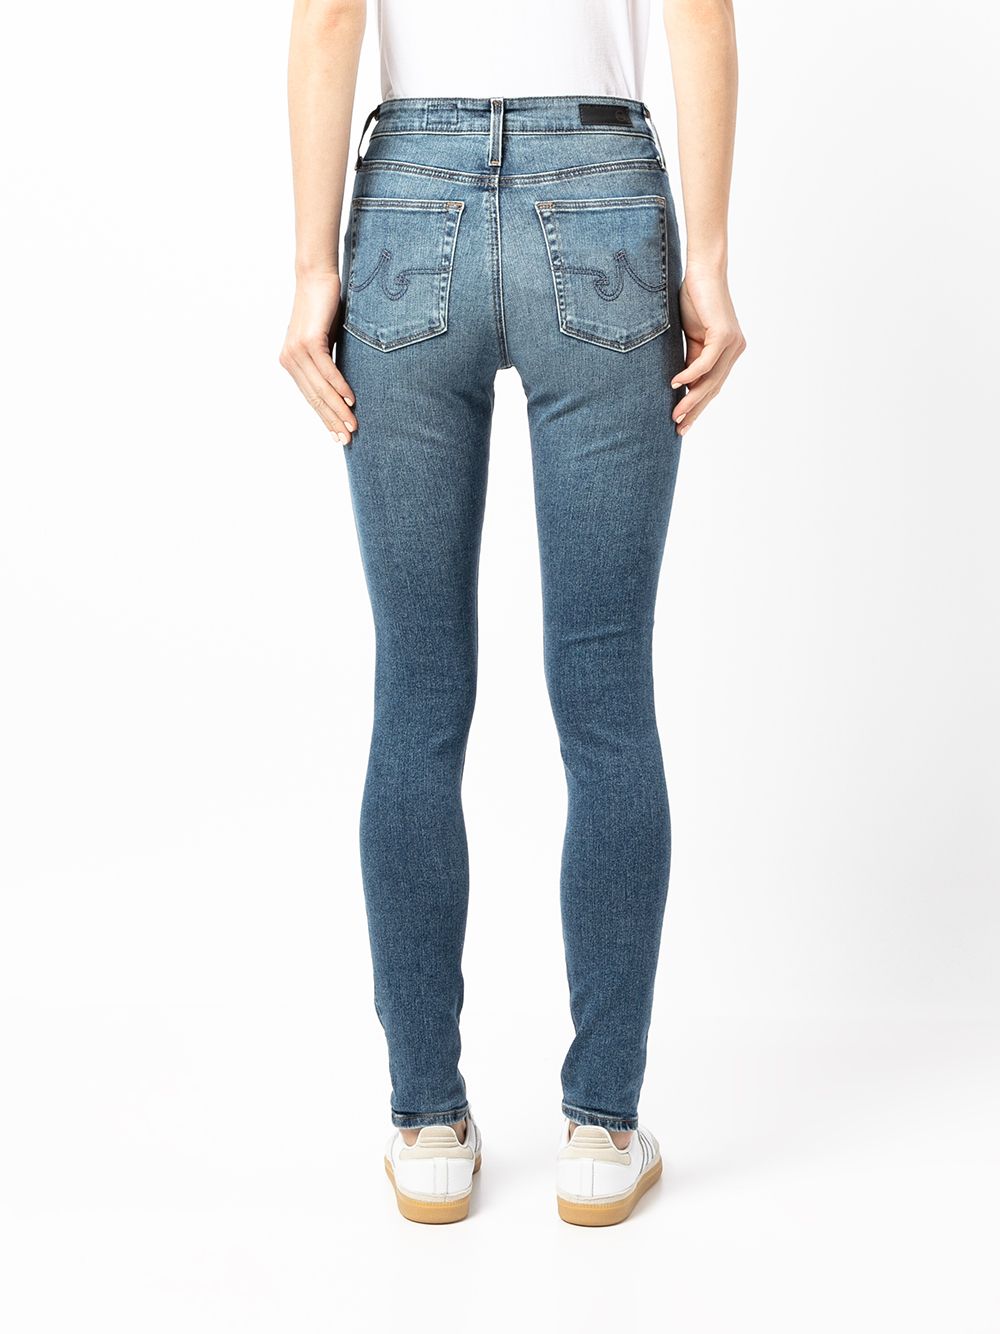 фото Ag jeans узкие джинсы средней посадки